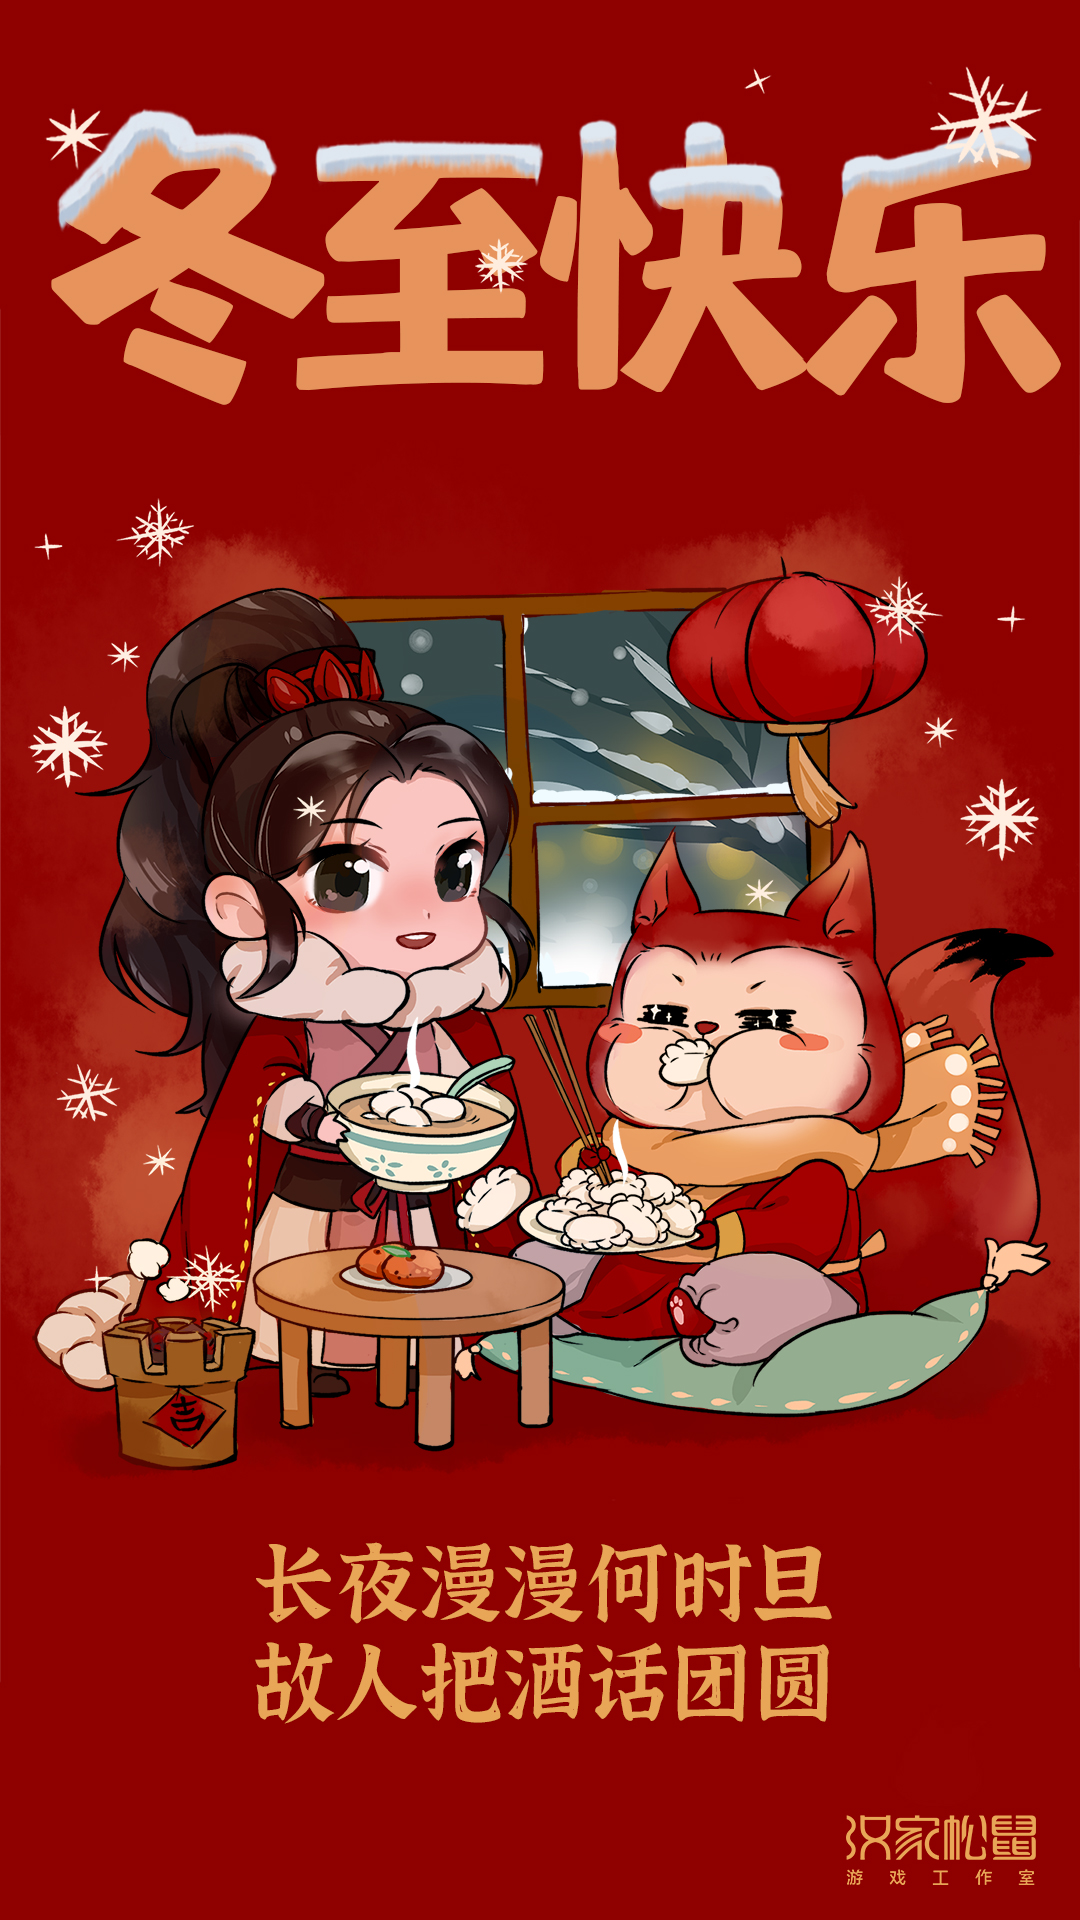 冬至快乐！晚上吃饺子还是汤圆？